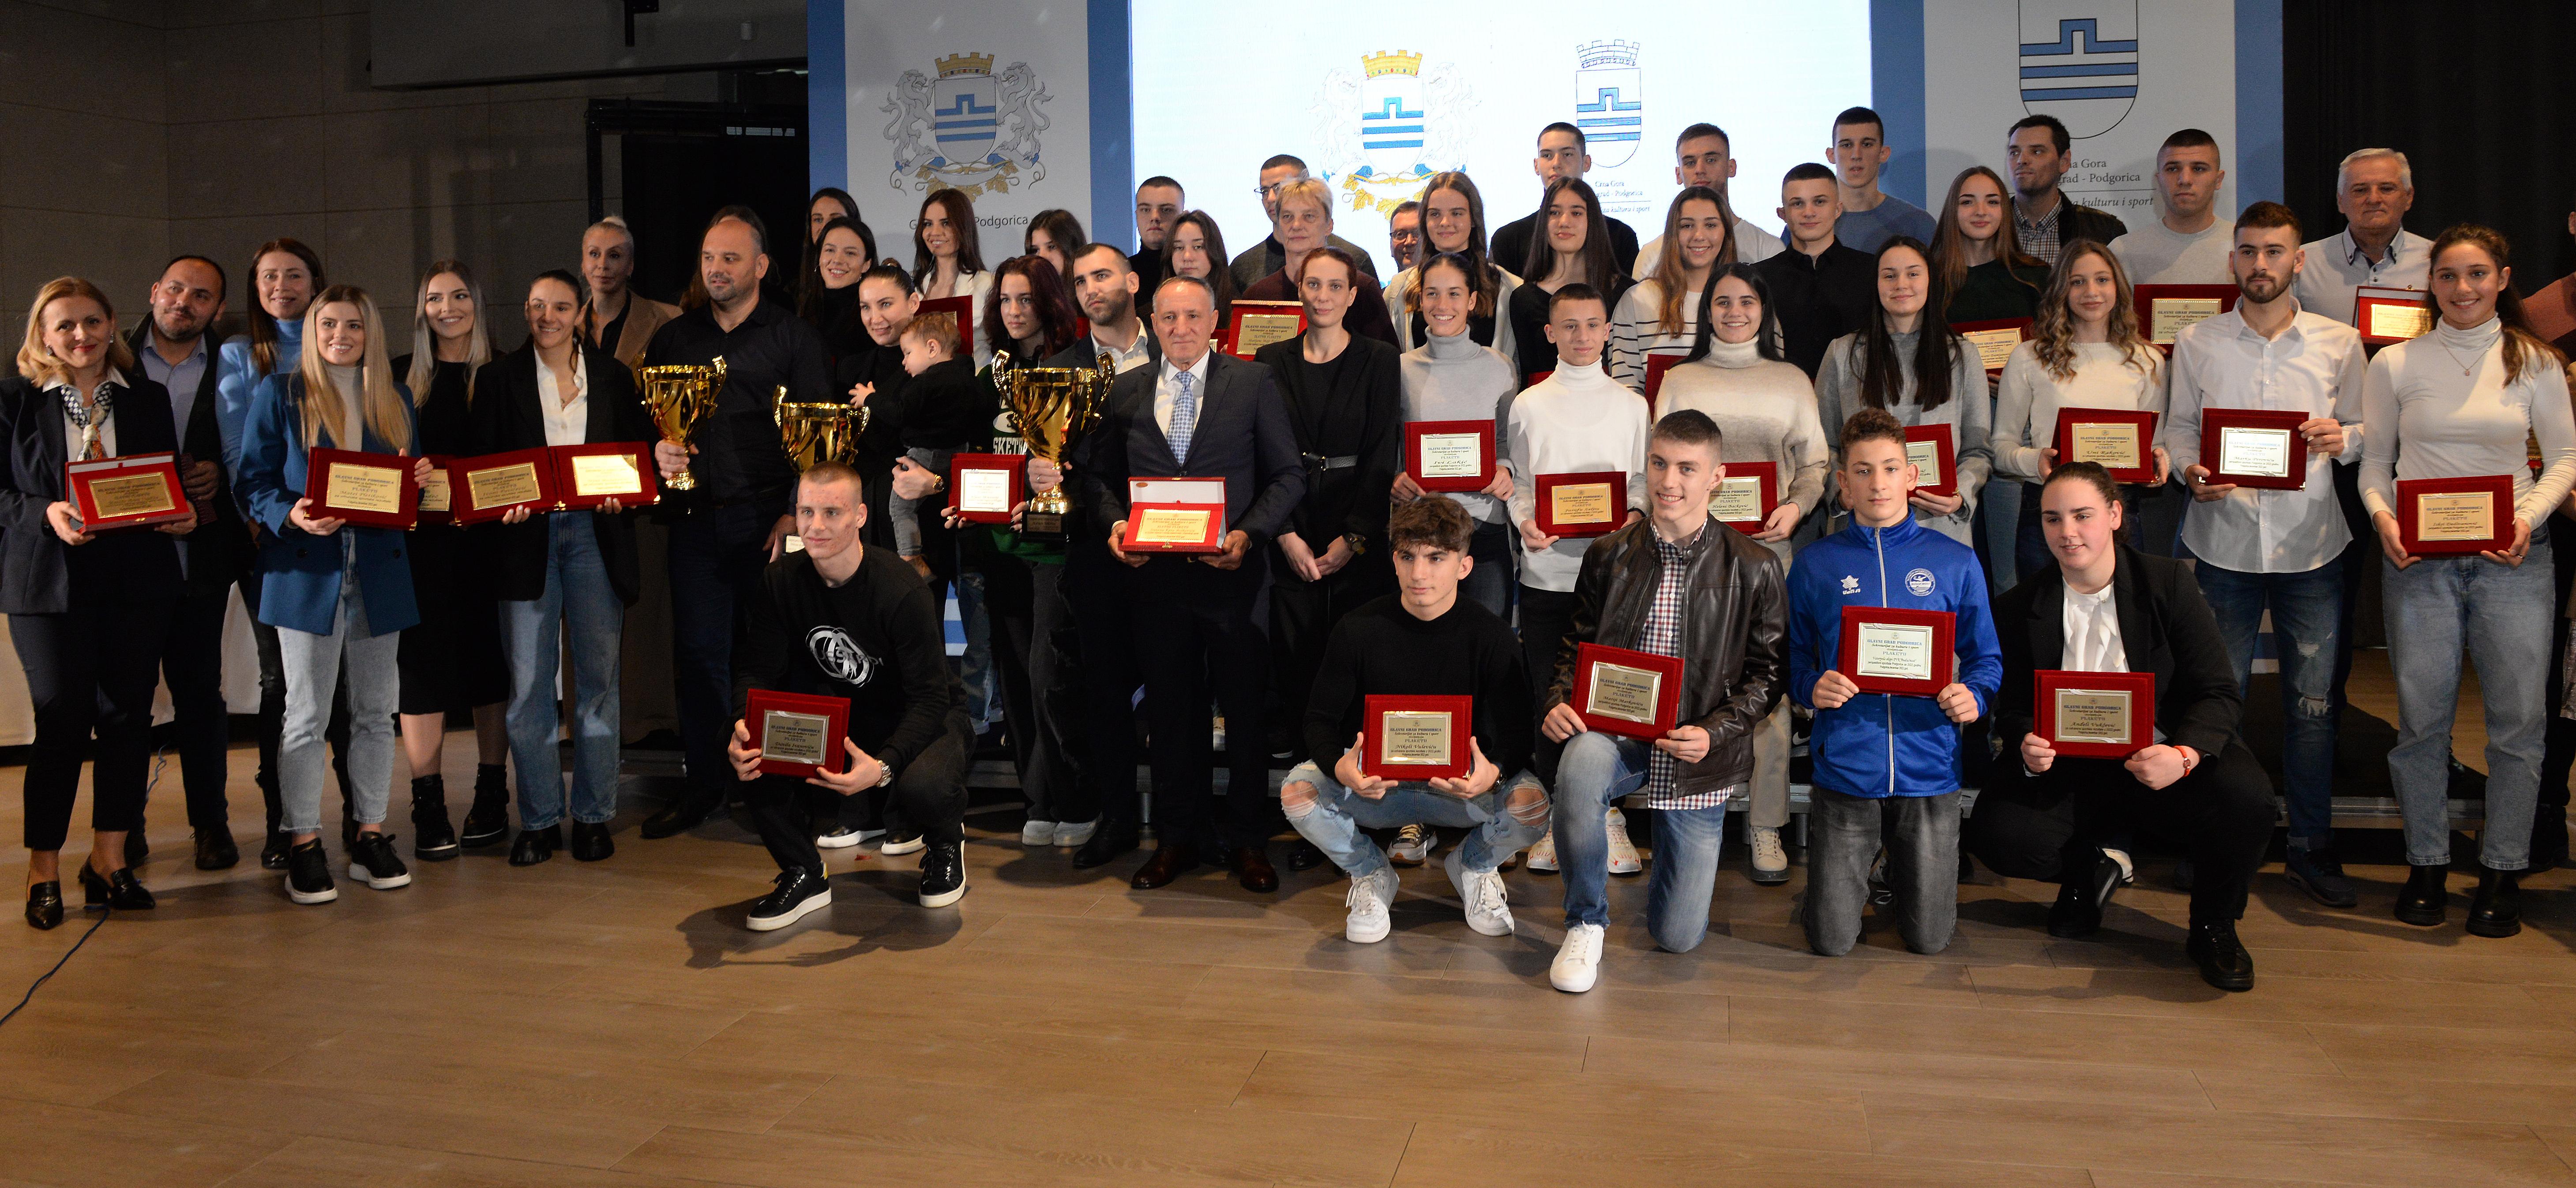 Uručena priznanja najboljim sportistima Podgorice; Vuković: Sportska 2022. jedna od najuspješnijih godina u modernoj crnogorskoj istoriji